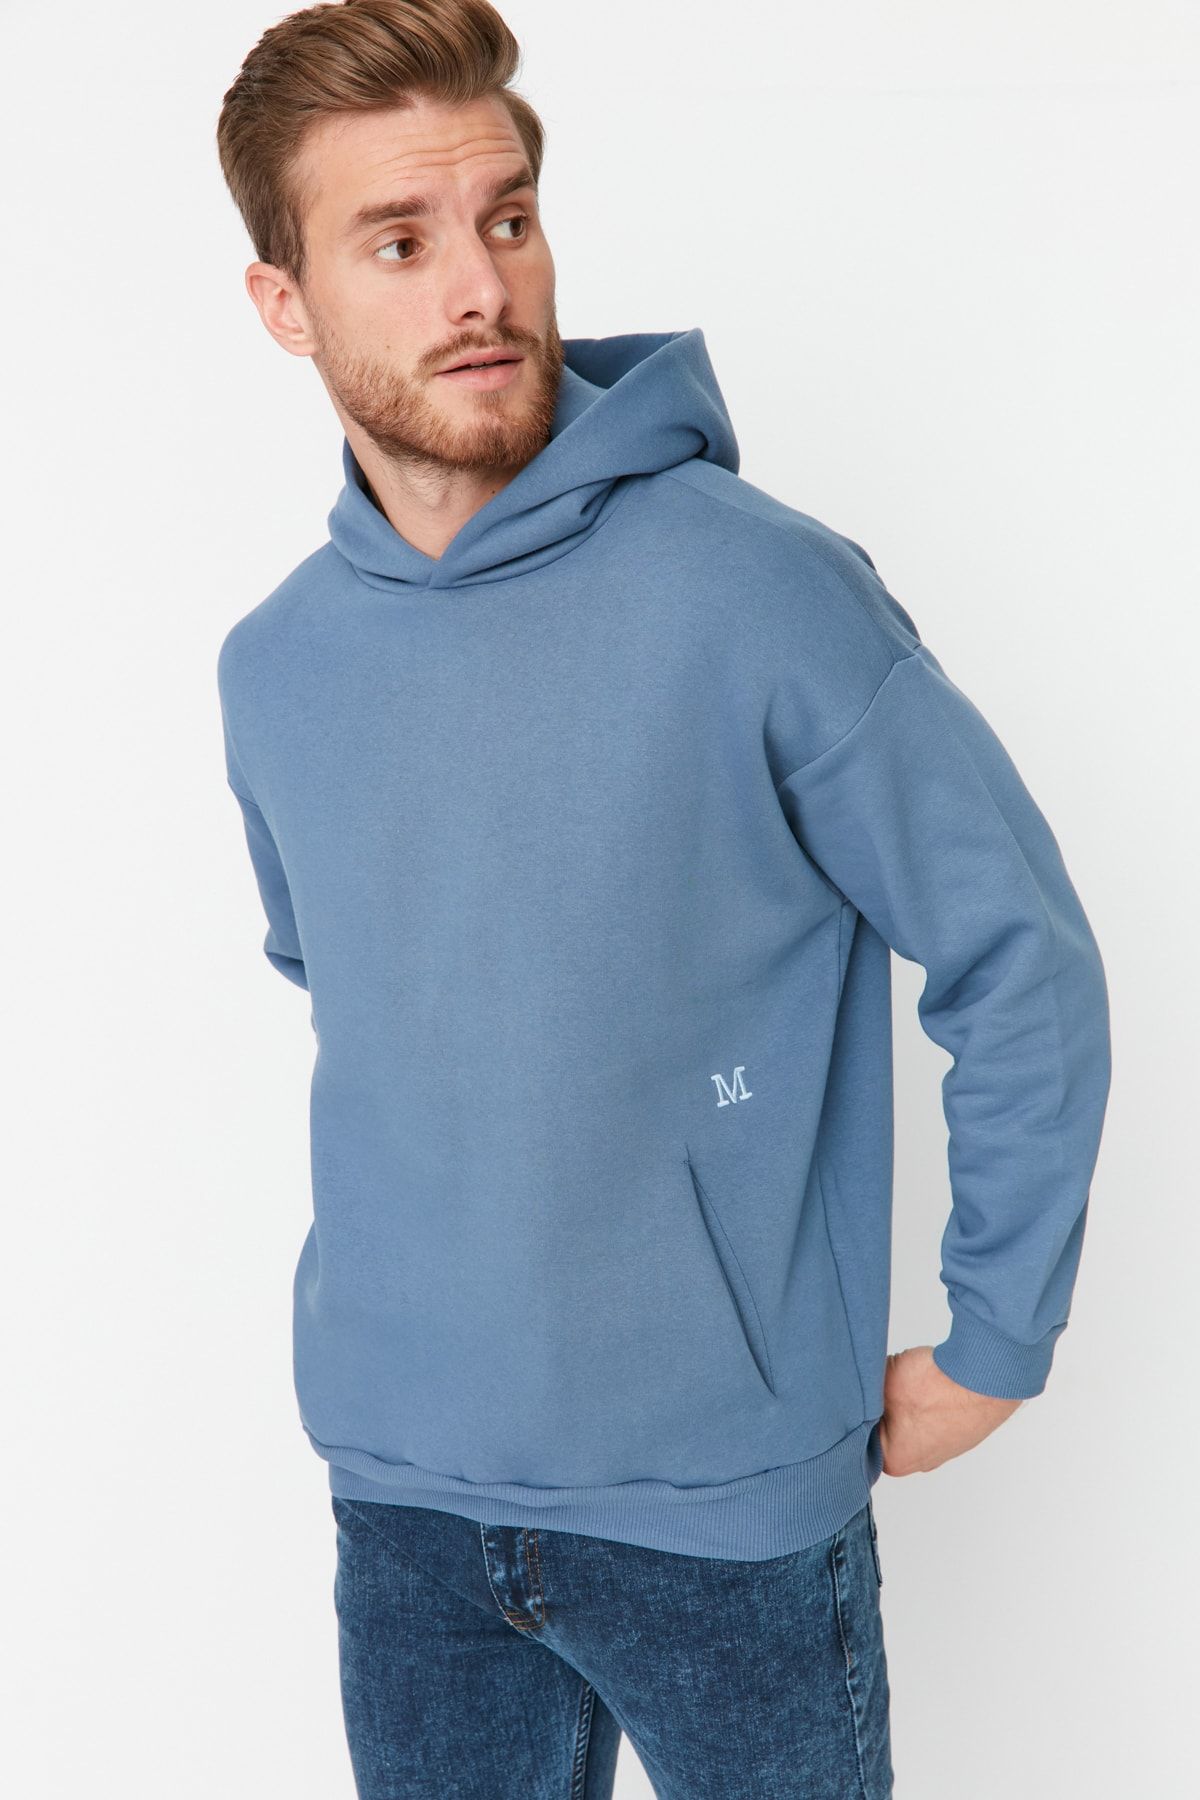 Trendyol Collection Blaues, übergroßes/weit geschnittenes, dickes Herren-Sweatshirt  mit Kapuze und winzigen Stickereien - Trendyol